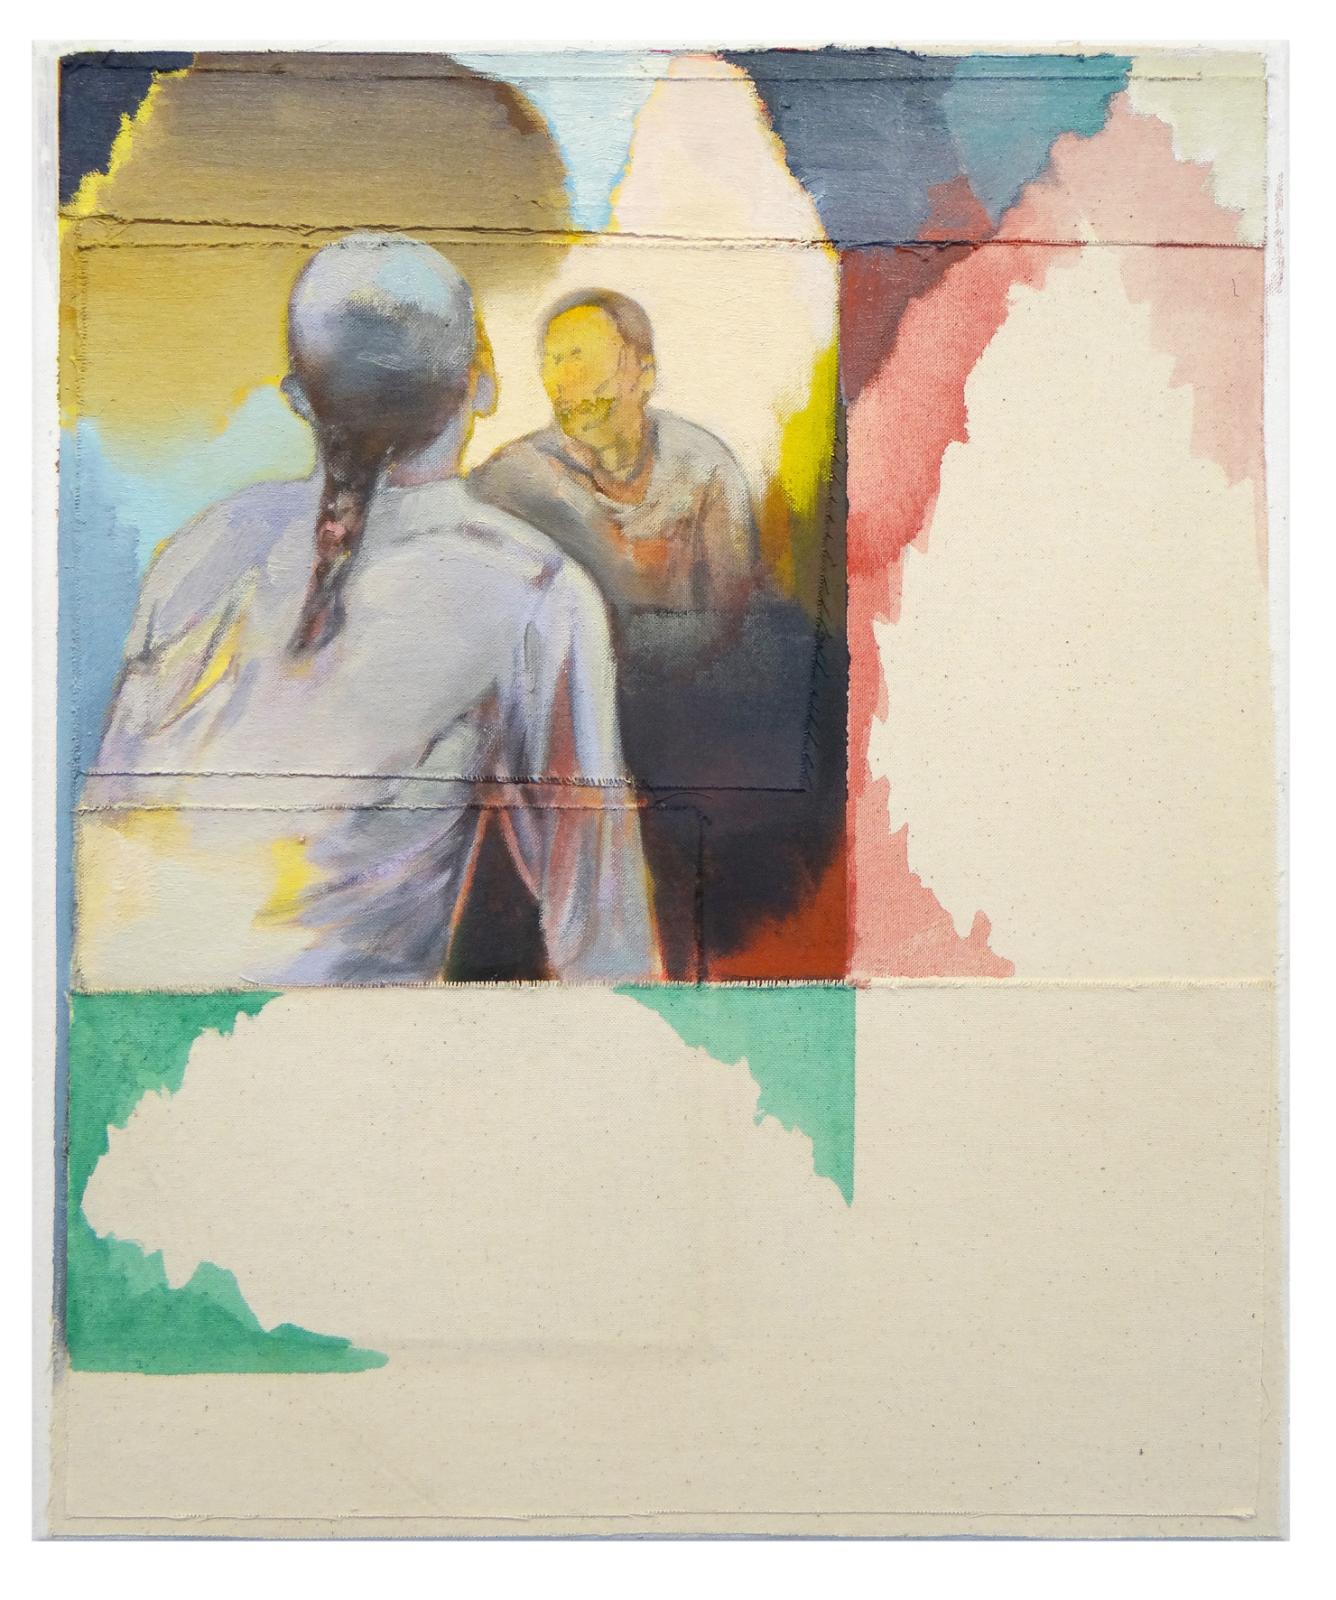 Christofer Kochs, Rückseite der Wirklichkeit 3a, 2020, Öl auf gefalteter Leinwand, 60 x 50 cm, Preis auf Anfrage